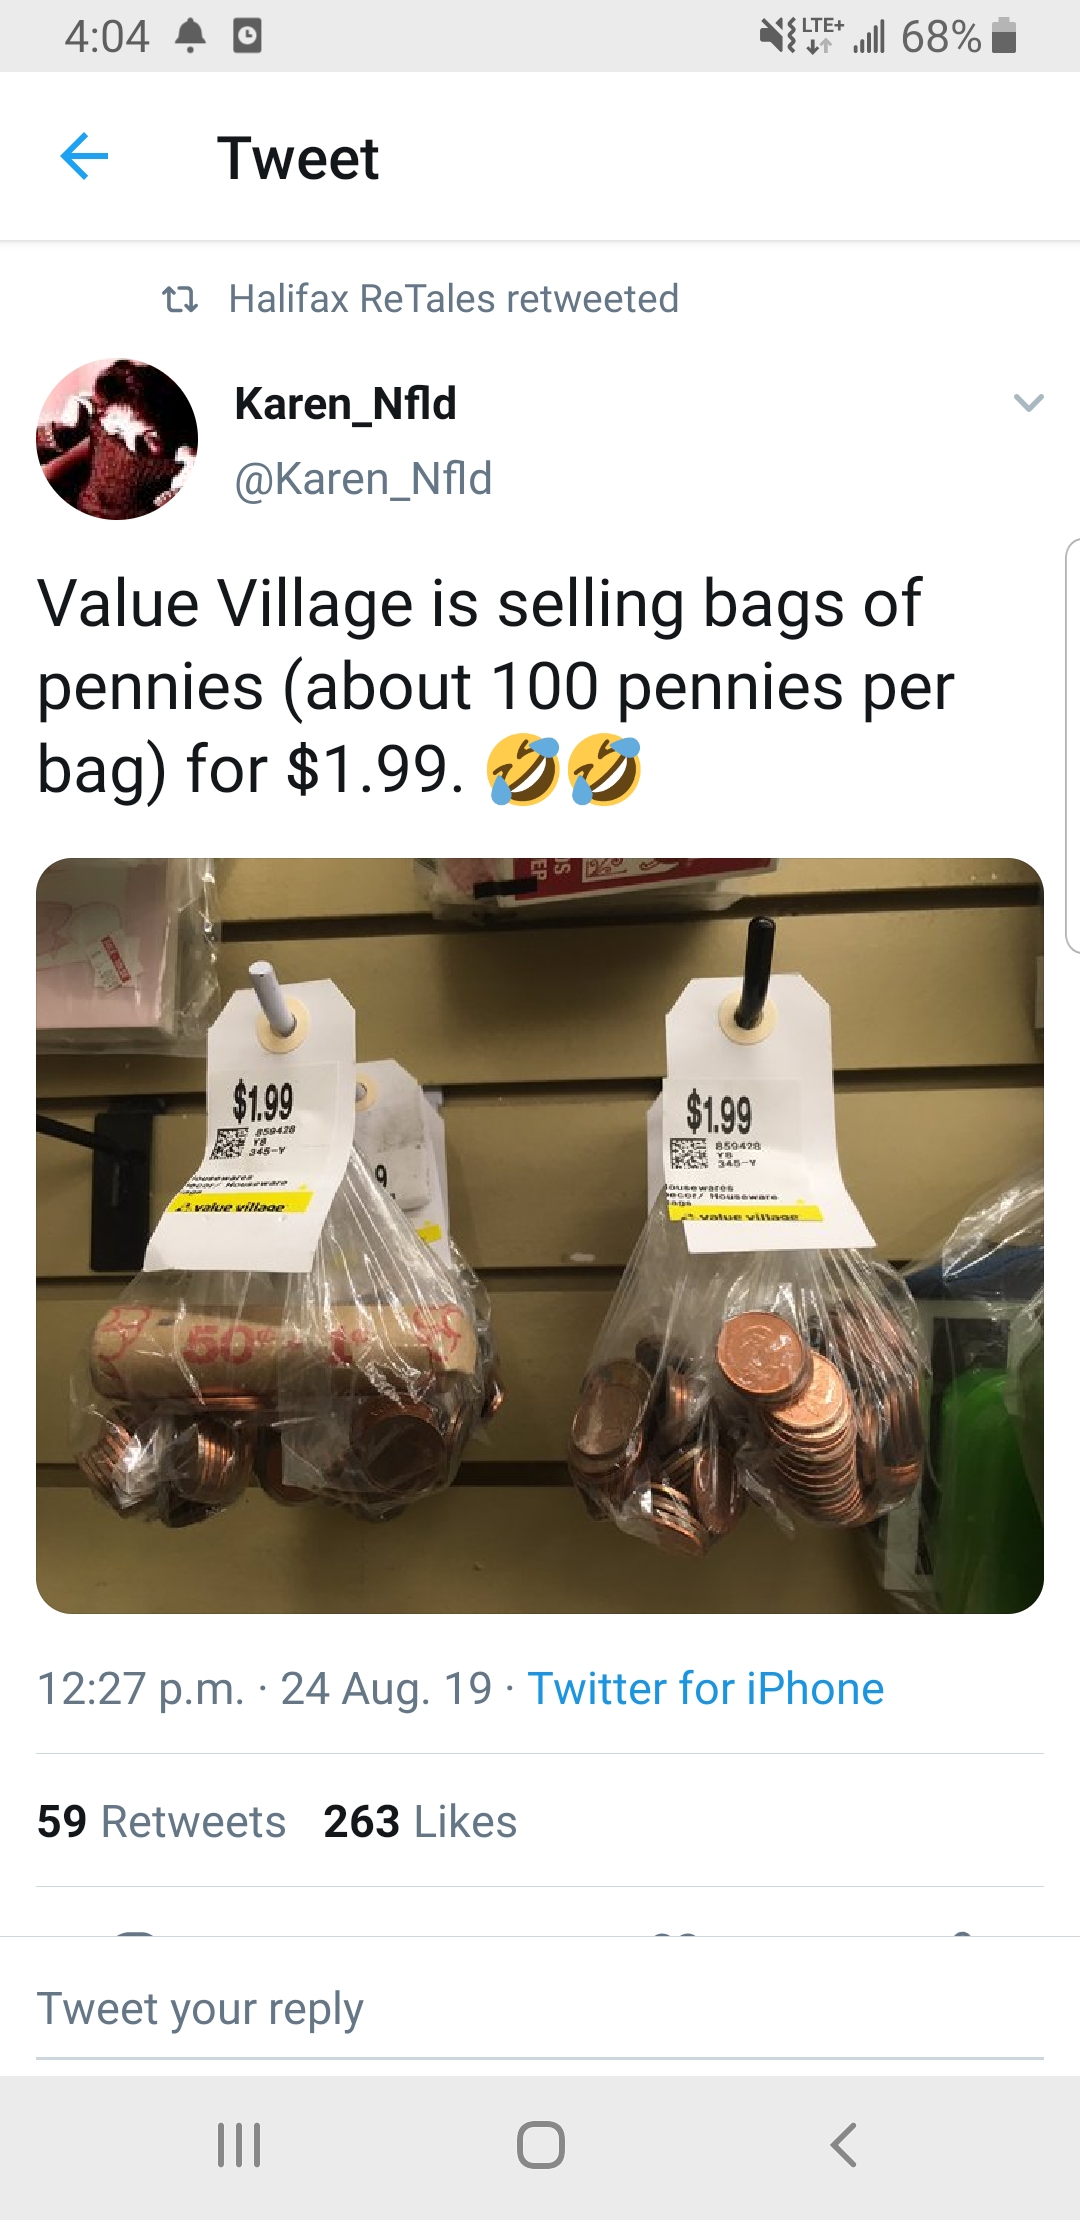 website - 40 9.68% Tweet 11 Halifax ReTales retweeted Karen_Nfld Value Village is selling bags of pennies about 100 pennies per bag for $1.99. 5 . . 24 Aug 19. Twitter for iPhone 59 263 Tweet your